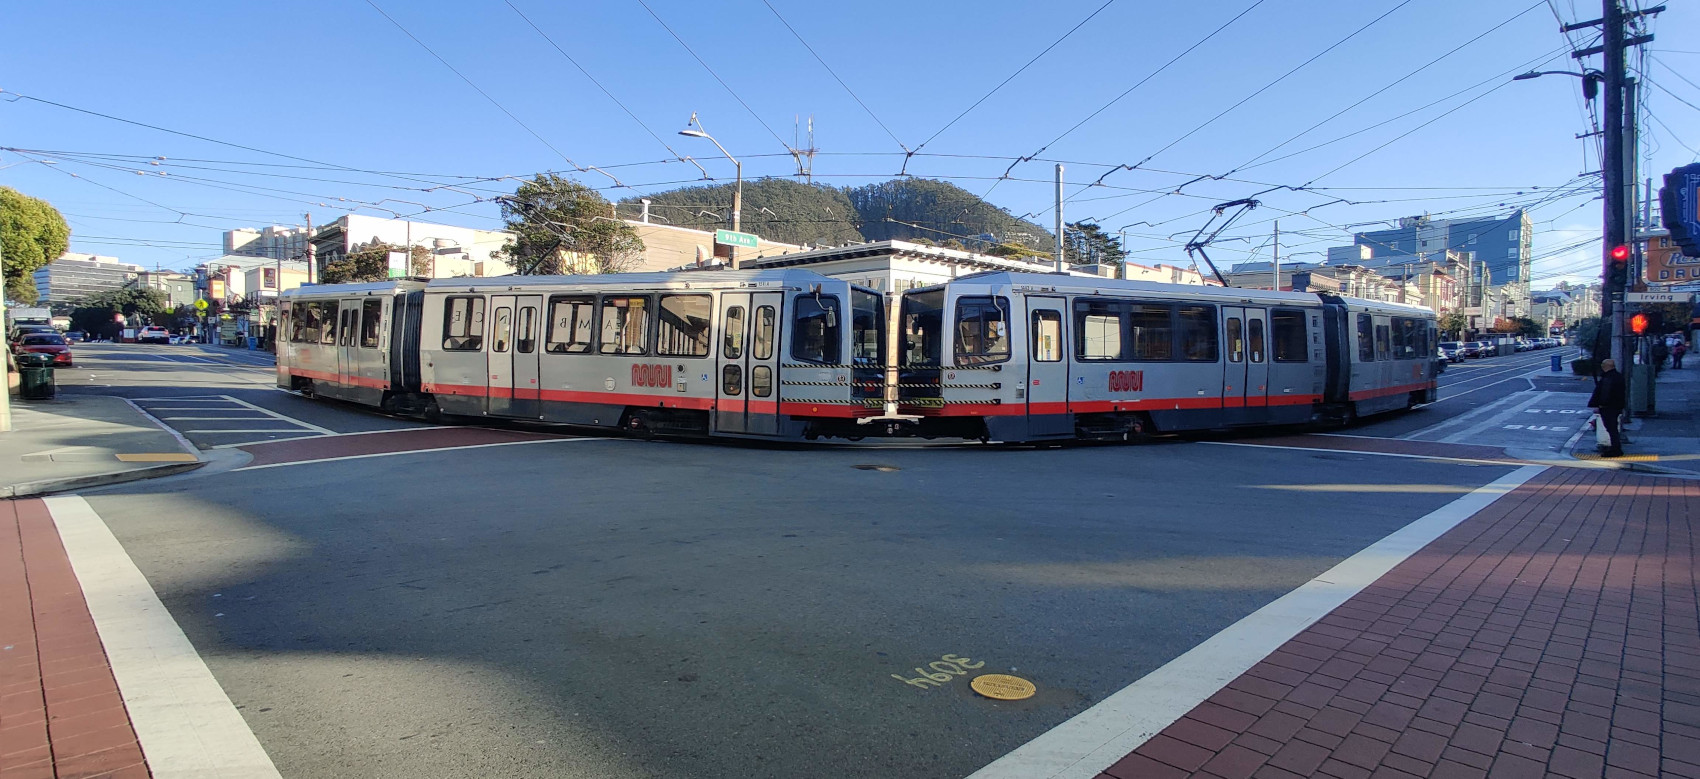 Сан-Франциско, область залива, Breda LRV № 1511; Сан-Франциско, область залива, Breda LRV № 1443